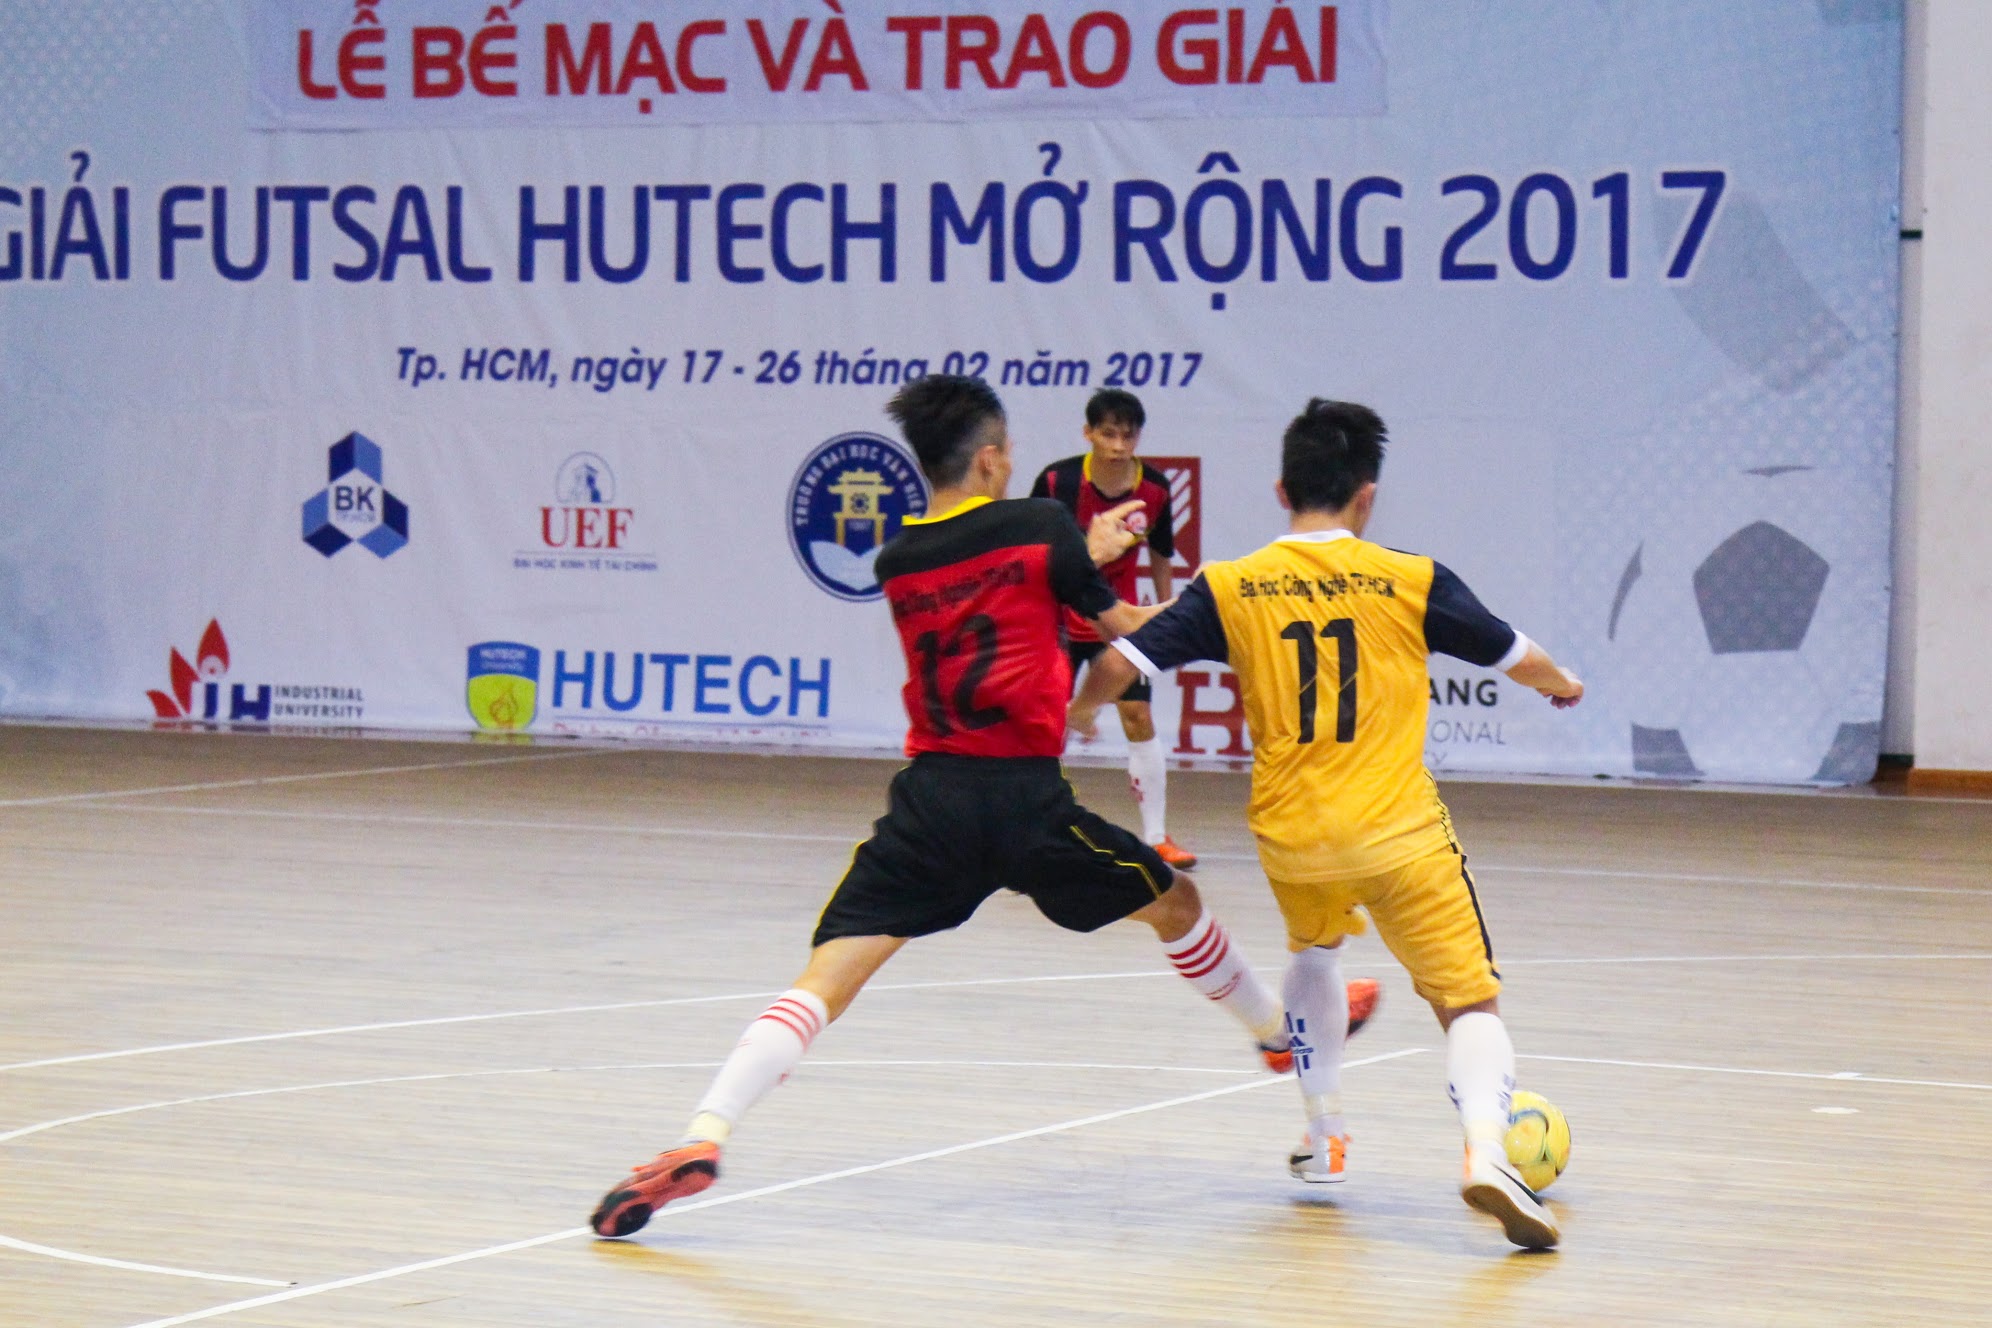 Vượt ĐH Công nghiệp TP.HCM, HUTECH vô địch “Giải Futsal HUTECH mở rộng 2017" 55